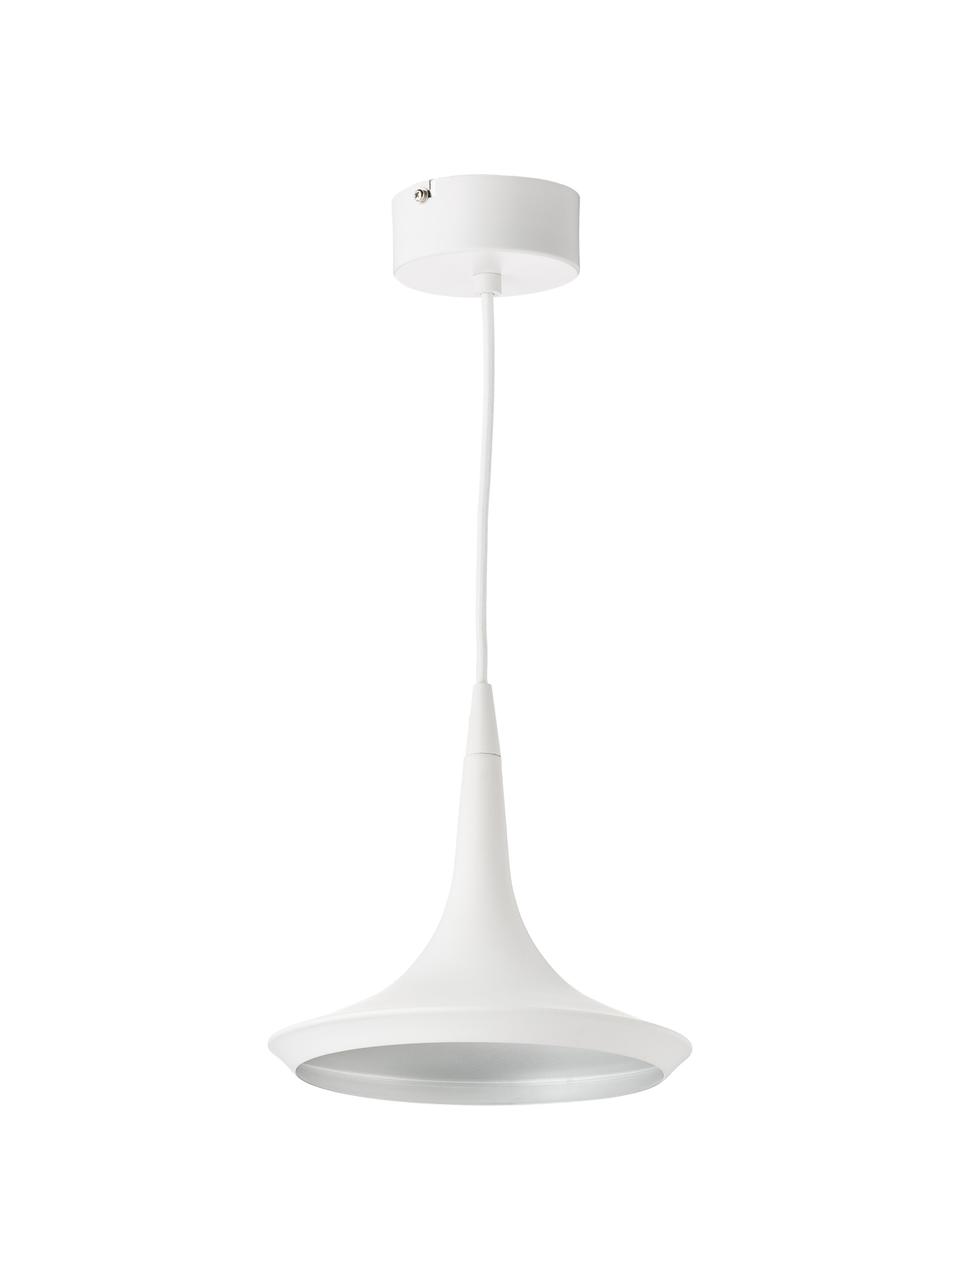 Mała lampa wisząca LED Swing, Biały, kremowy, Ø 22 cm